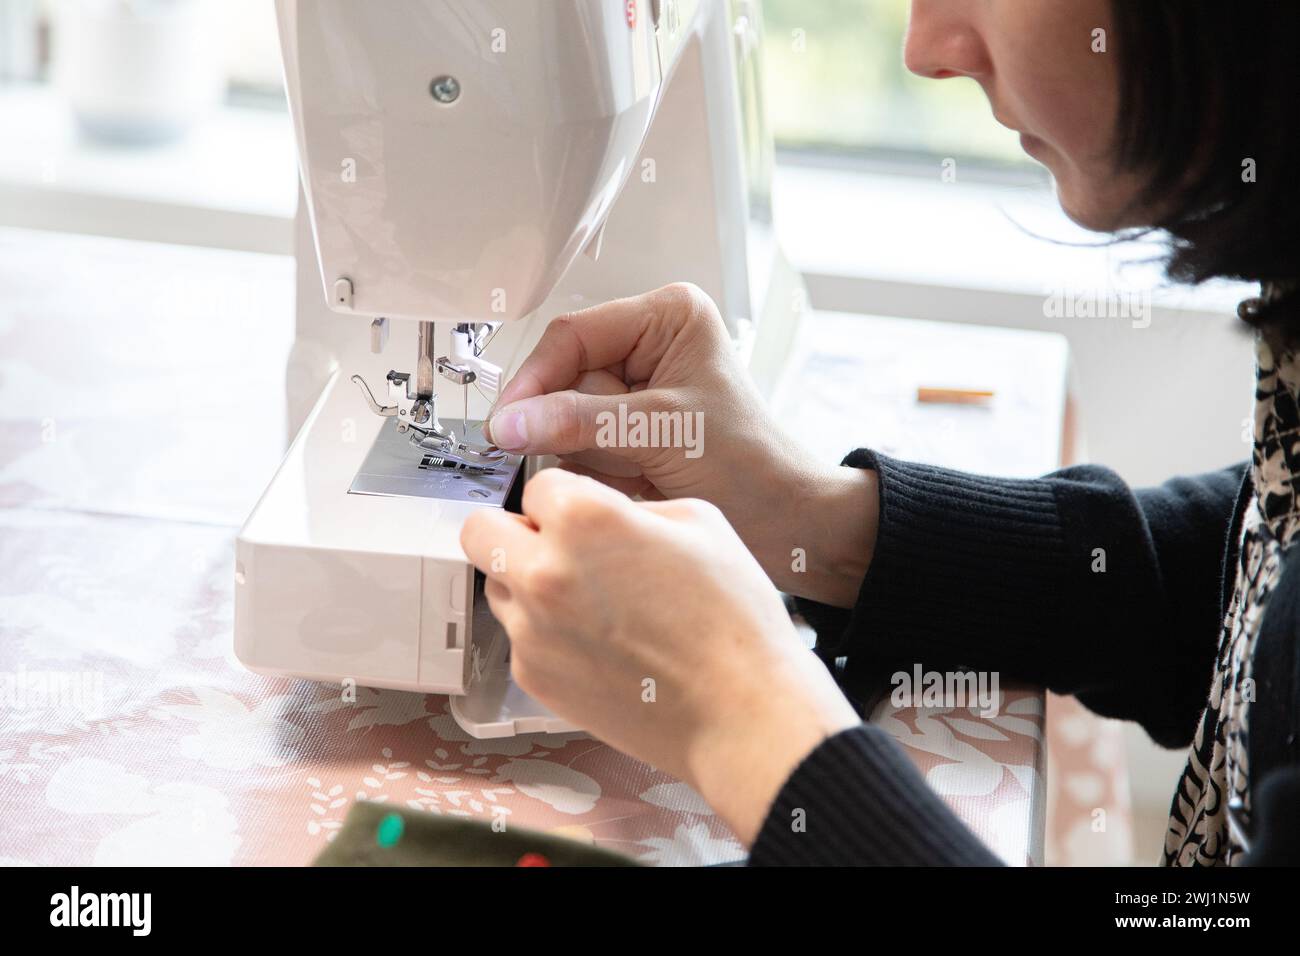 Die Hand der Frau vor der Nähmaschine, um die Nadel zu fädeln und dann zu nähen. Präzision und winzige Details. Stockfoto